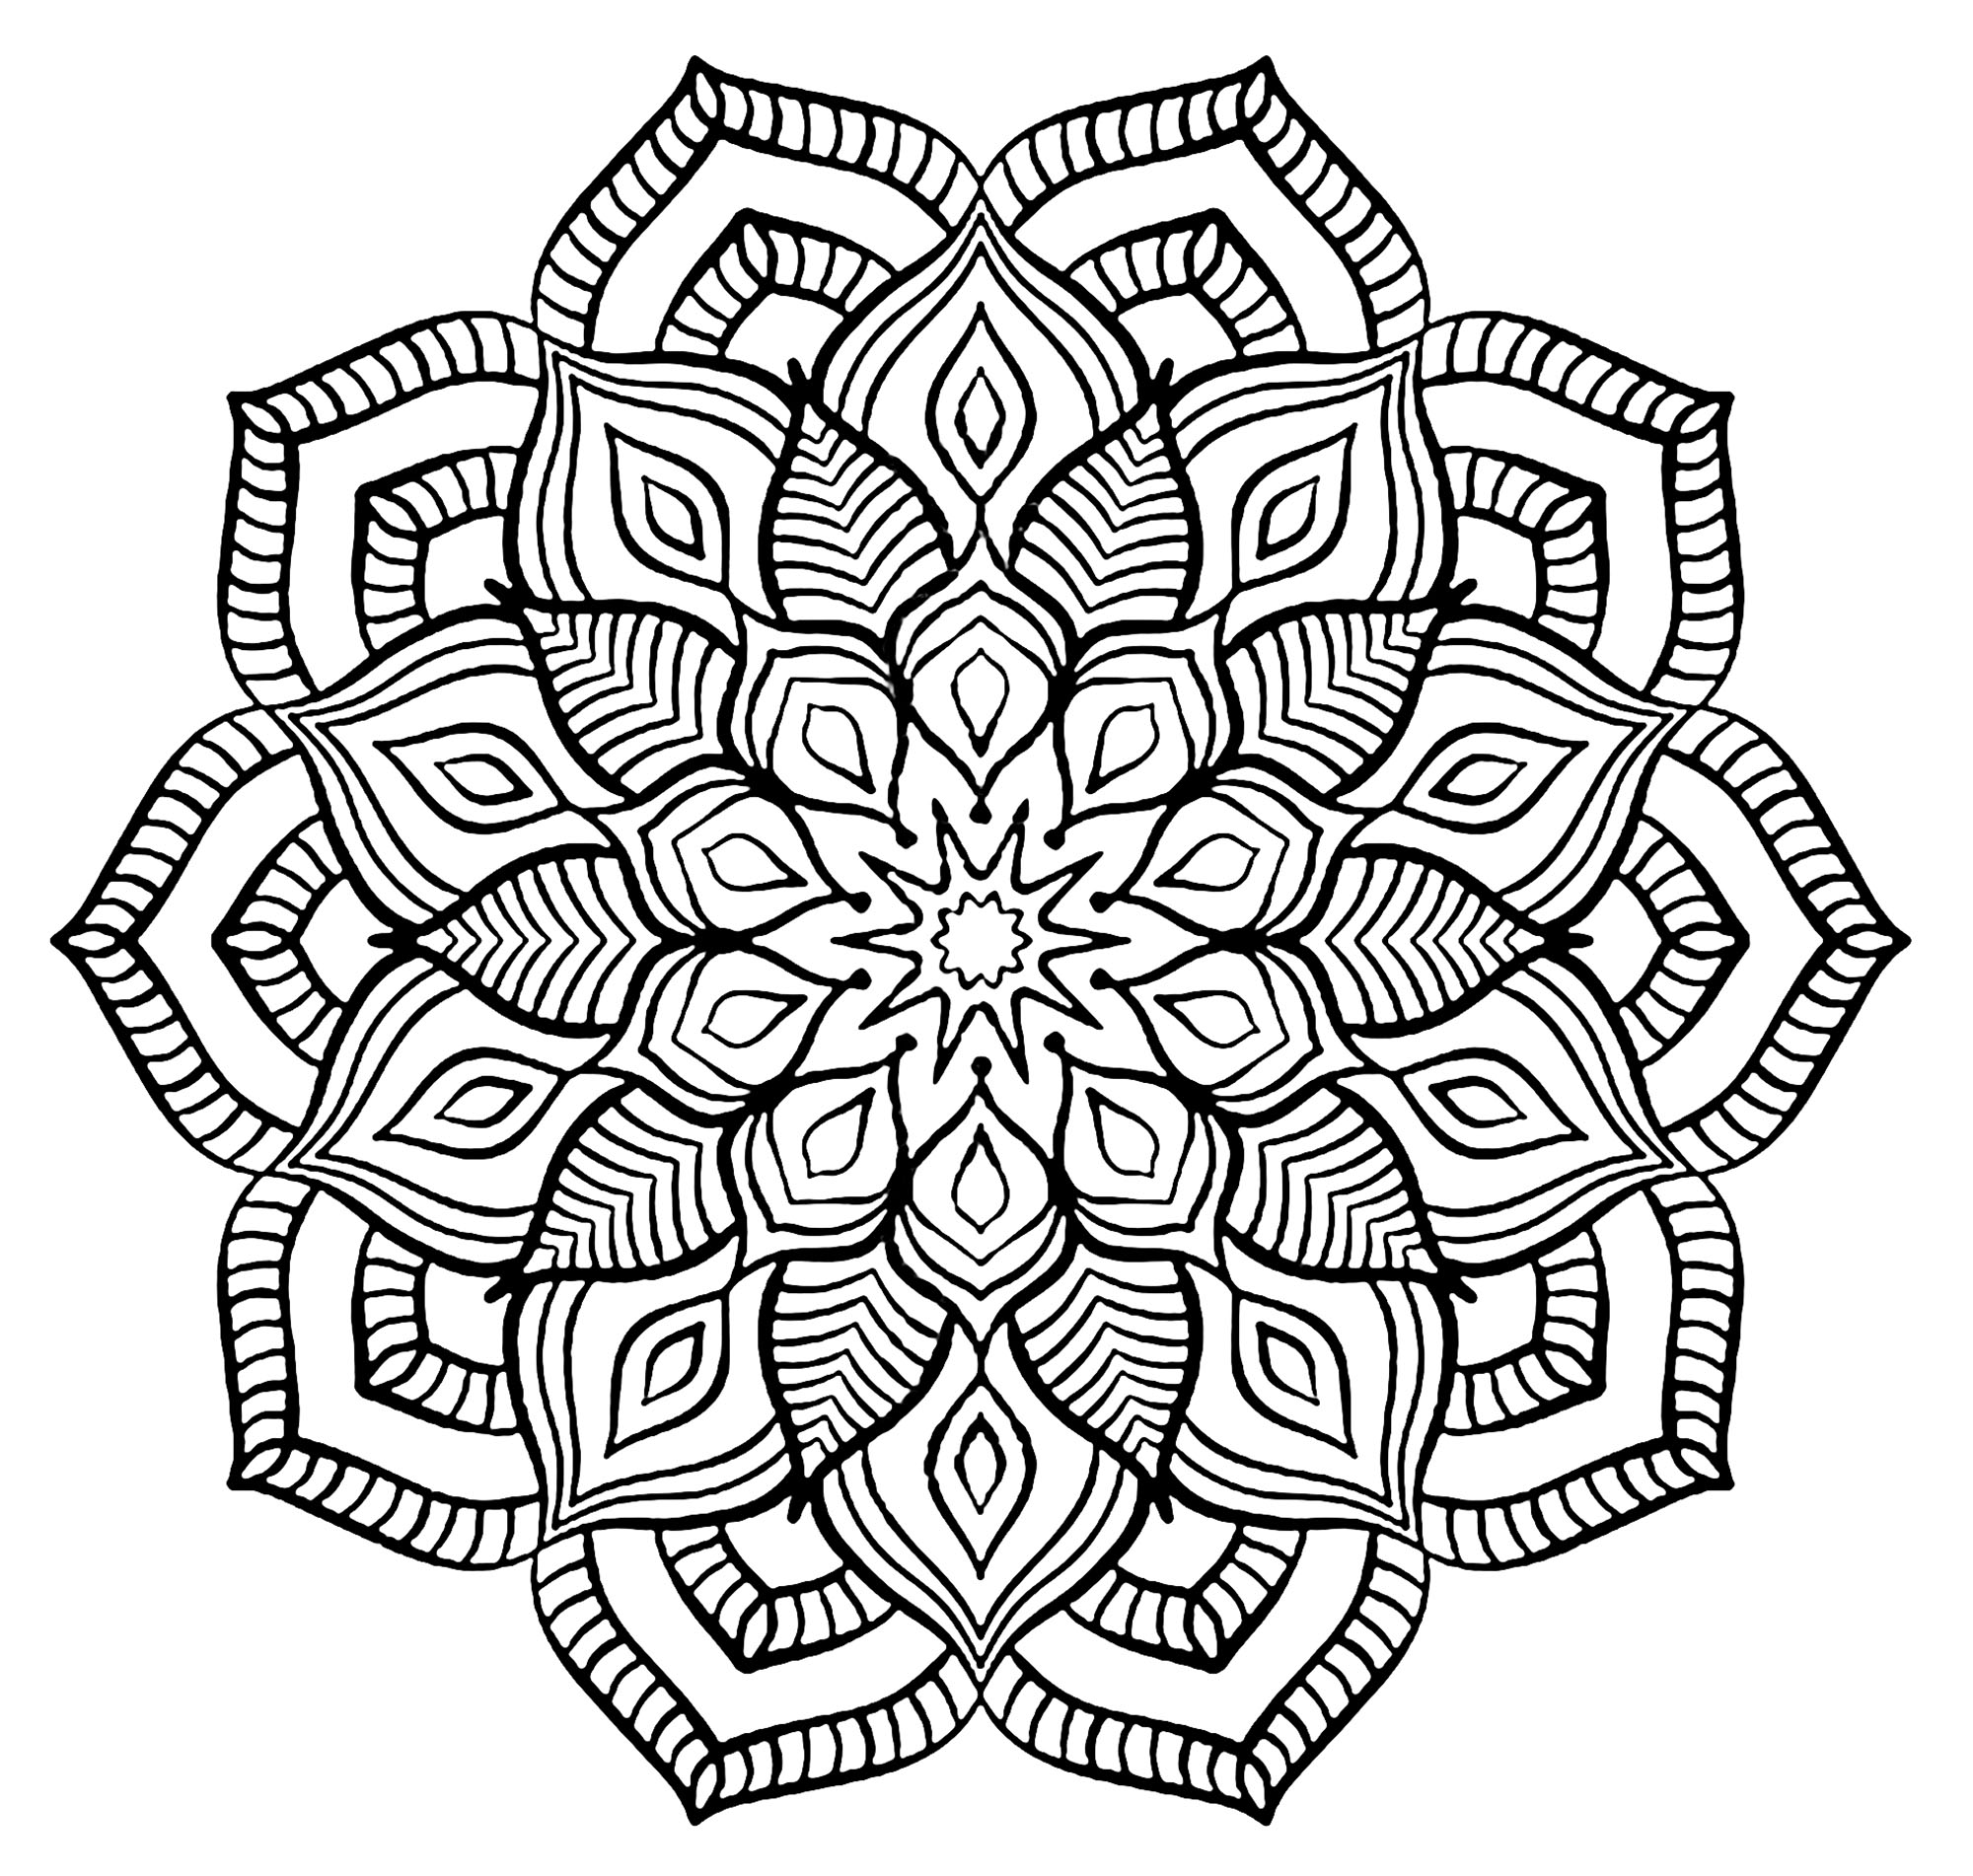 Tanti piccoli dettagli e aree piuttosto ridotte, per un Mandala 'a grandi fiori' molto originale e armonioso.